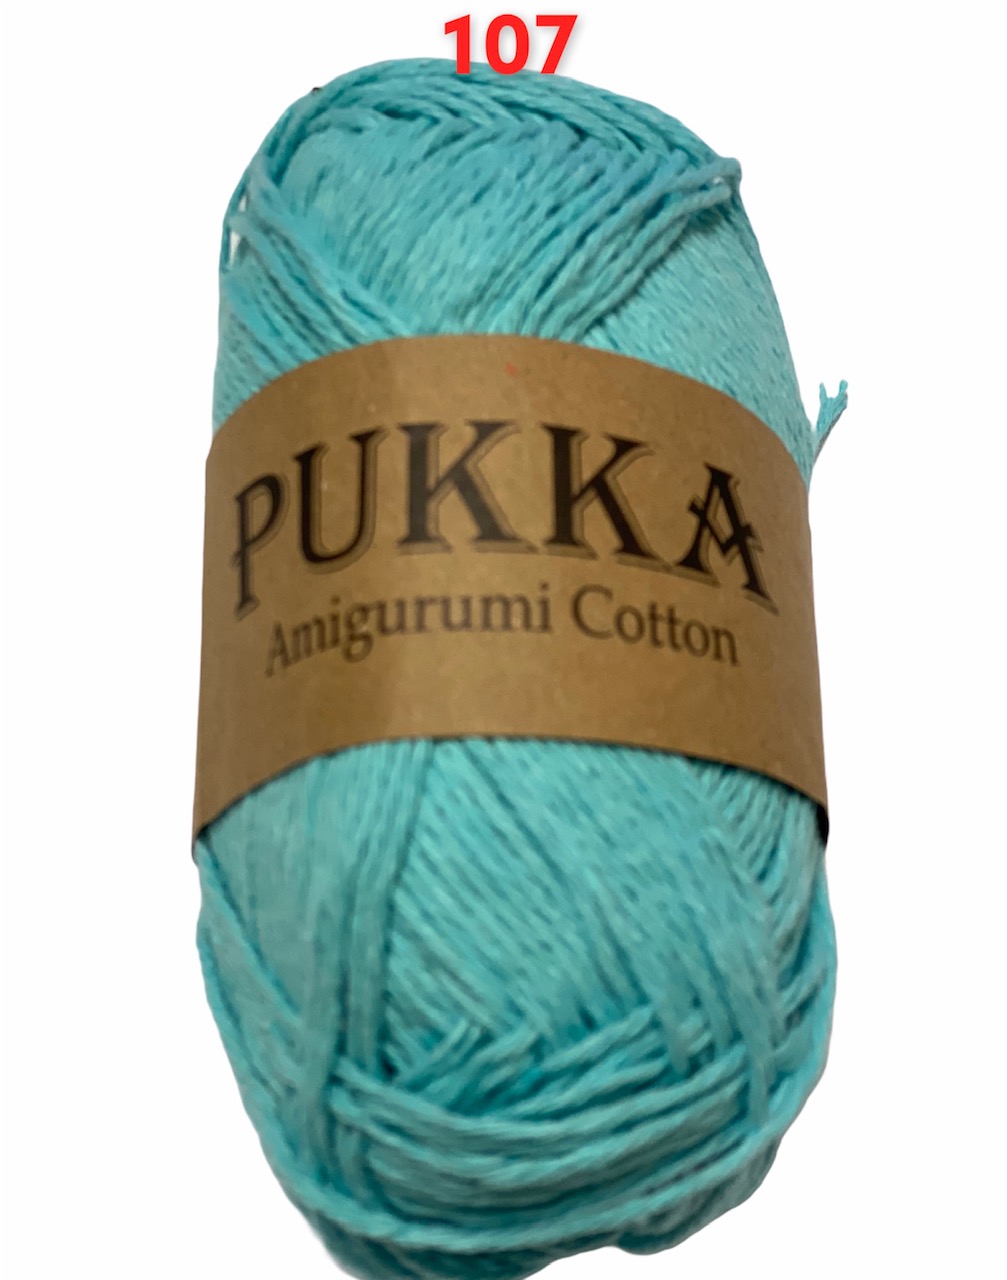 PUKKA Amigurumi Cotton 100g,107